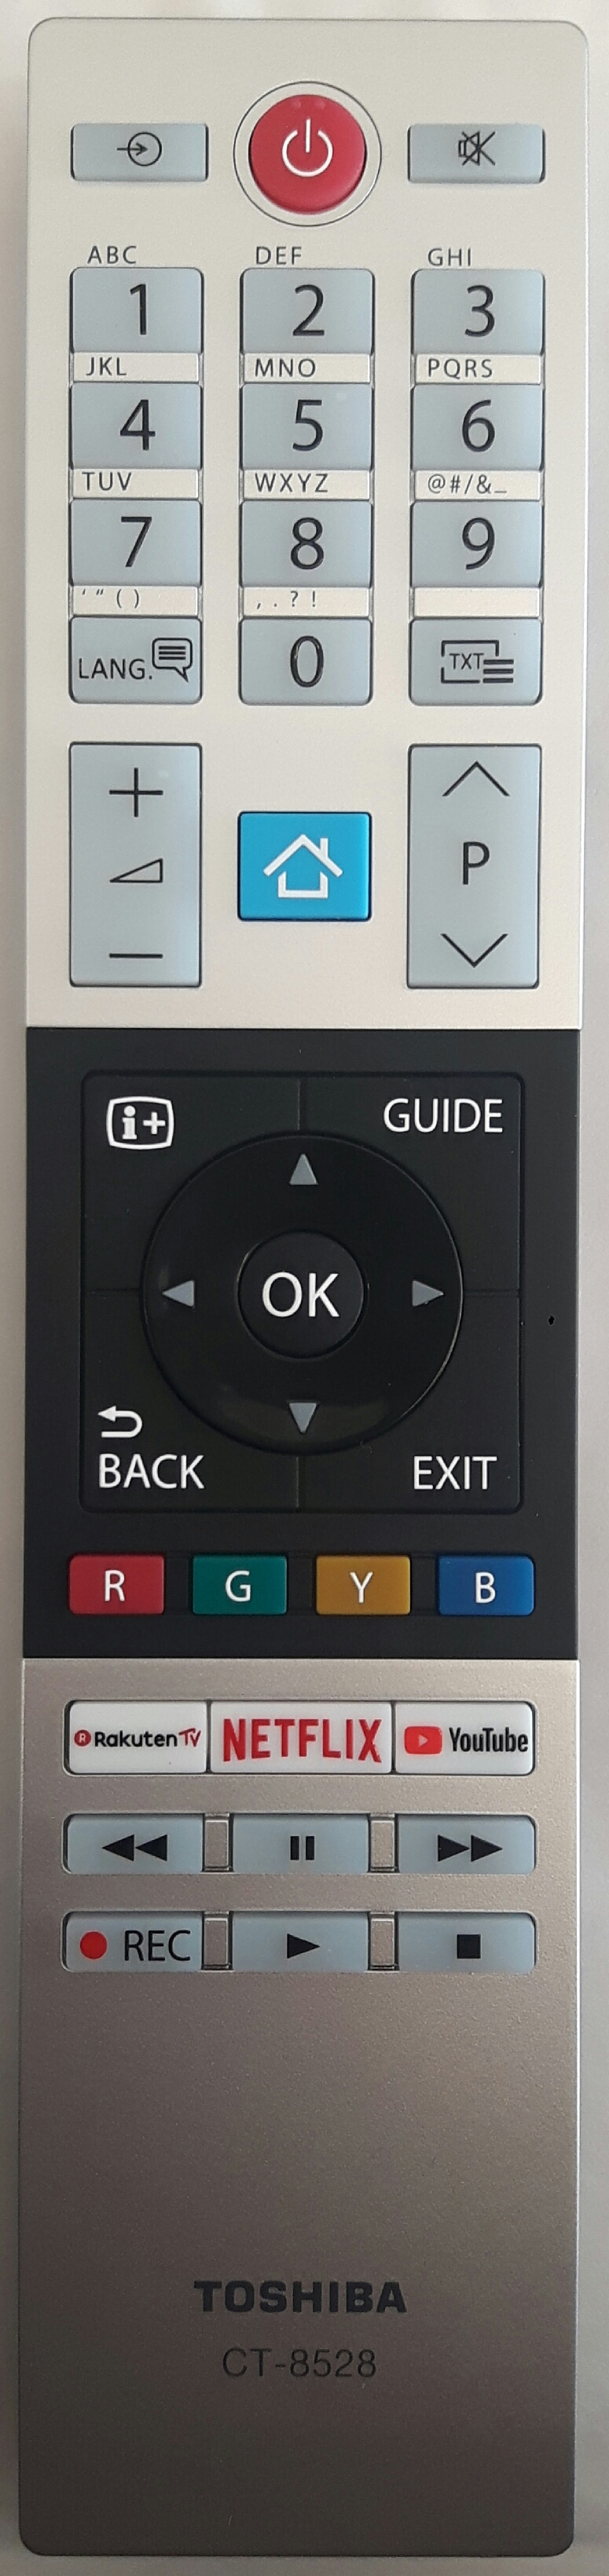 TOSHIBA 10119689 Remote Control Original 